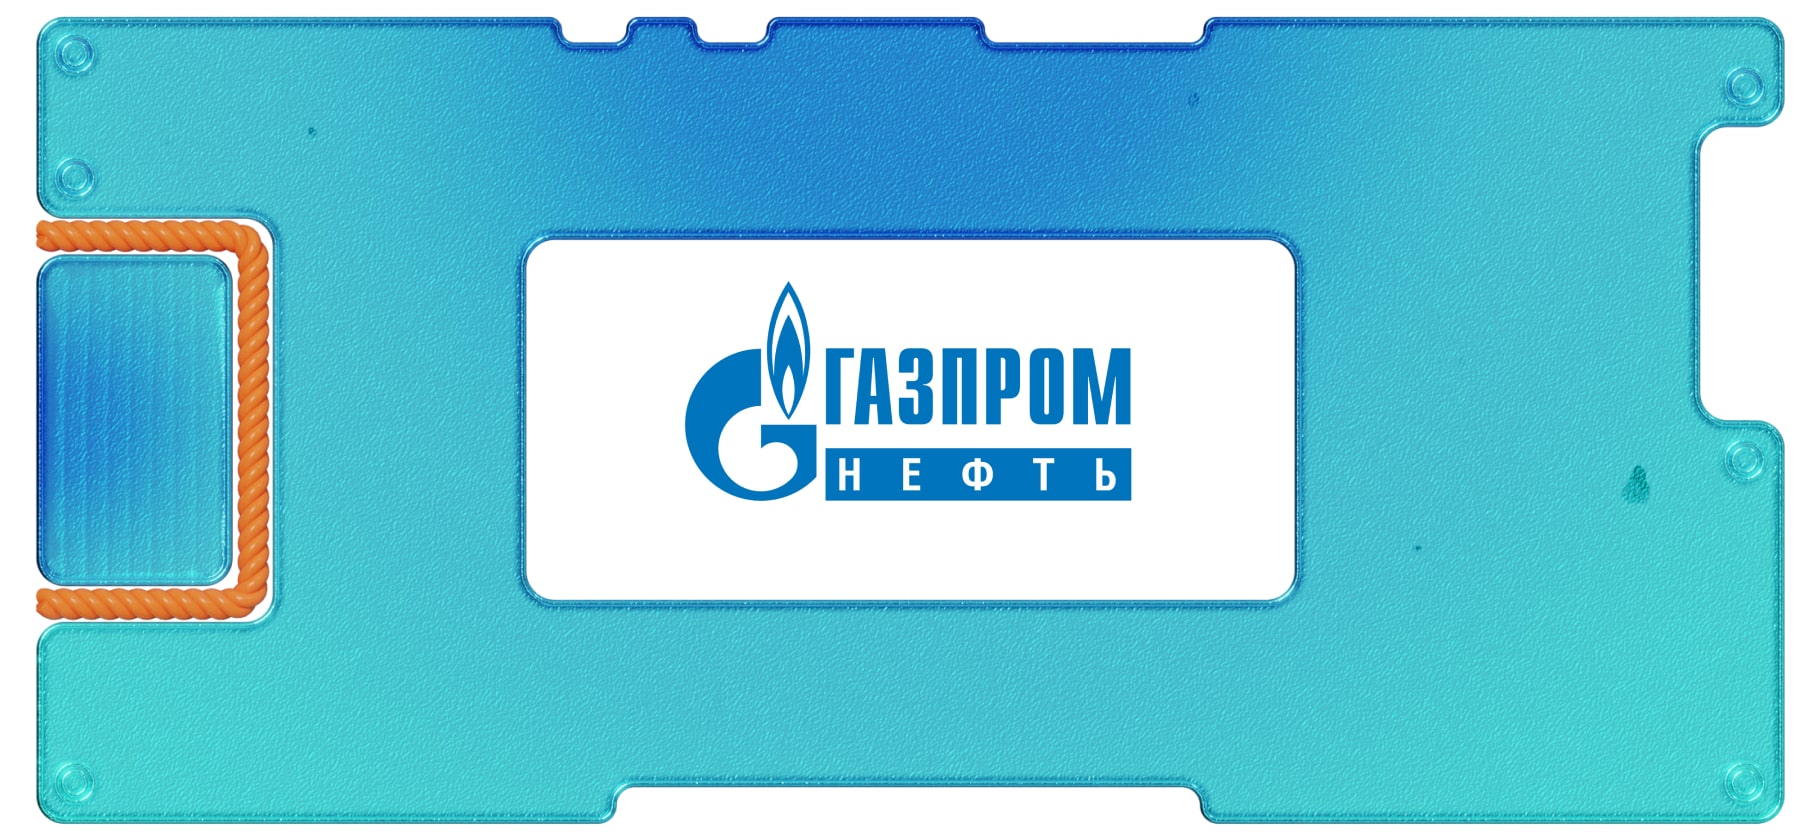 В 2020 году чистая прибыль «Газпром-нефти» упала на 71%